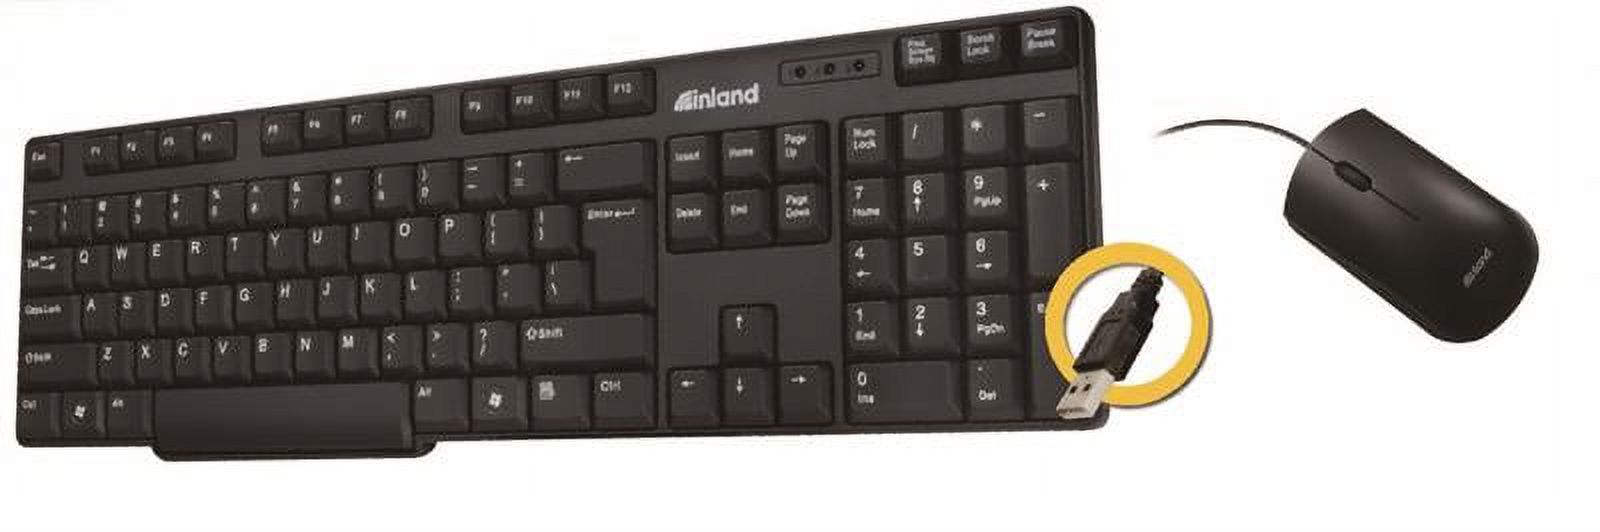 Pro Basic USB Keyboard Mice Combo - image 1 of 1